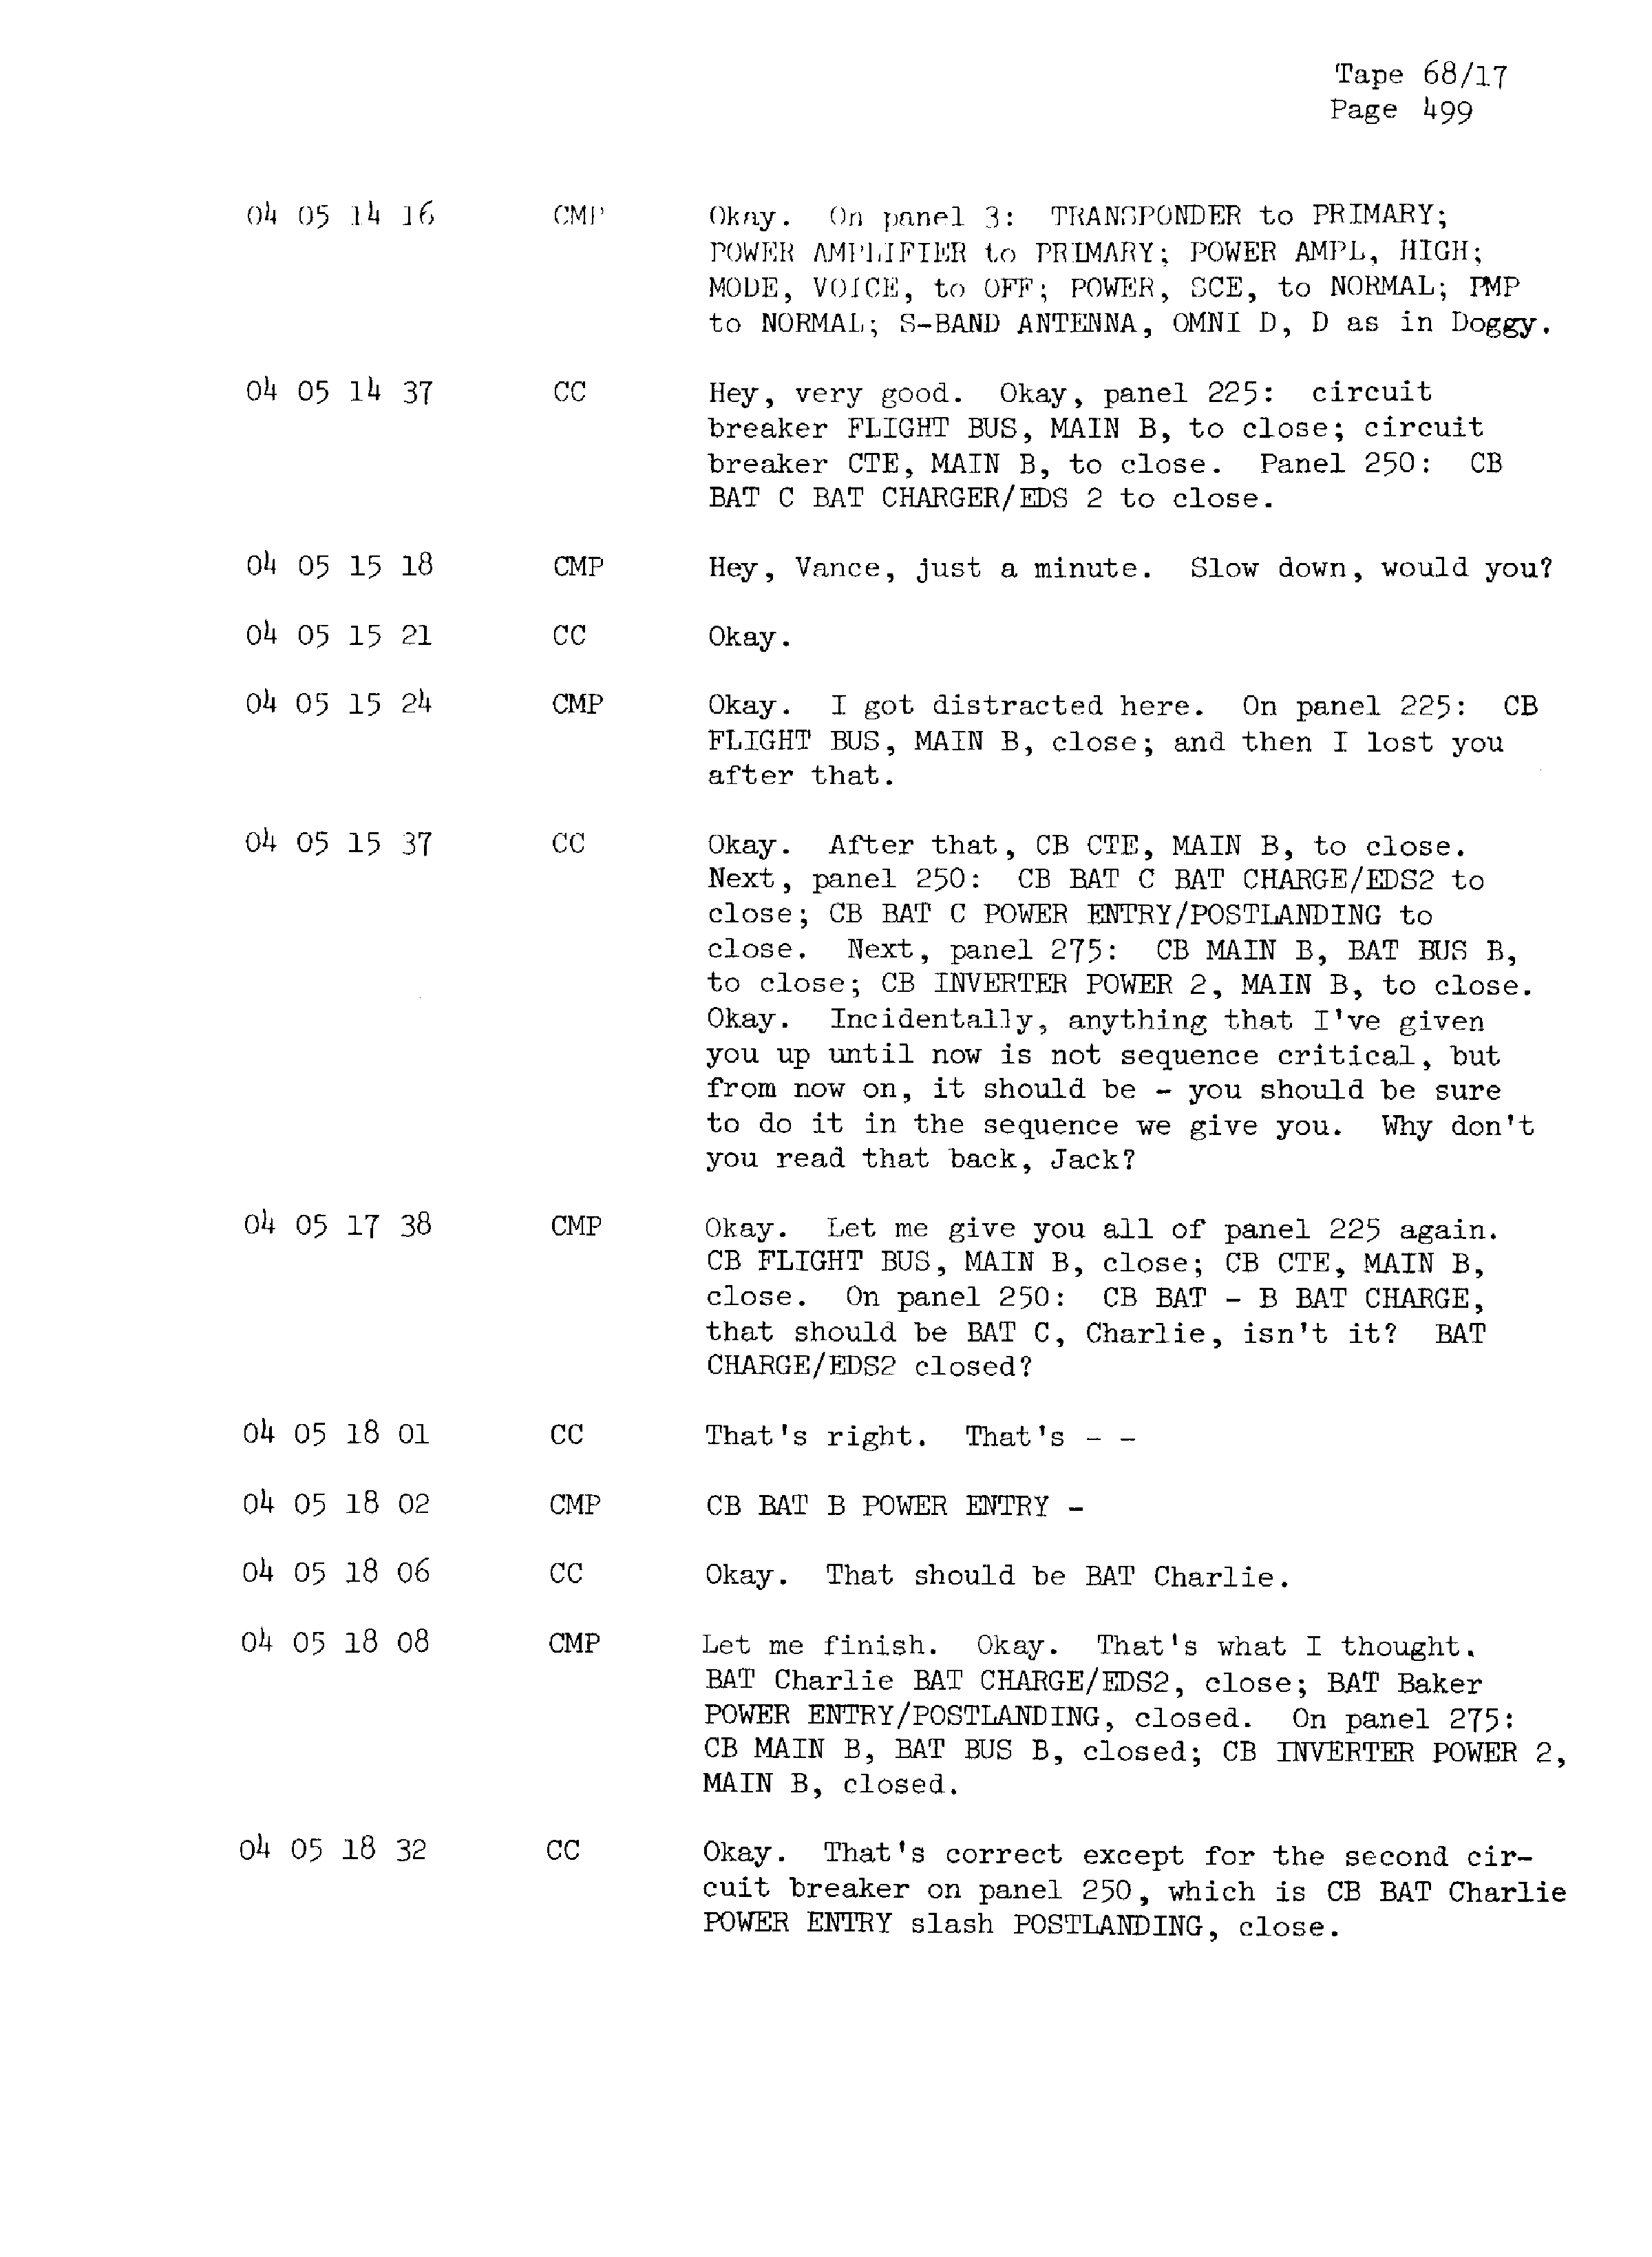 Page 506 of Apollo 13’s original transcript